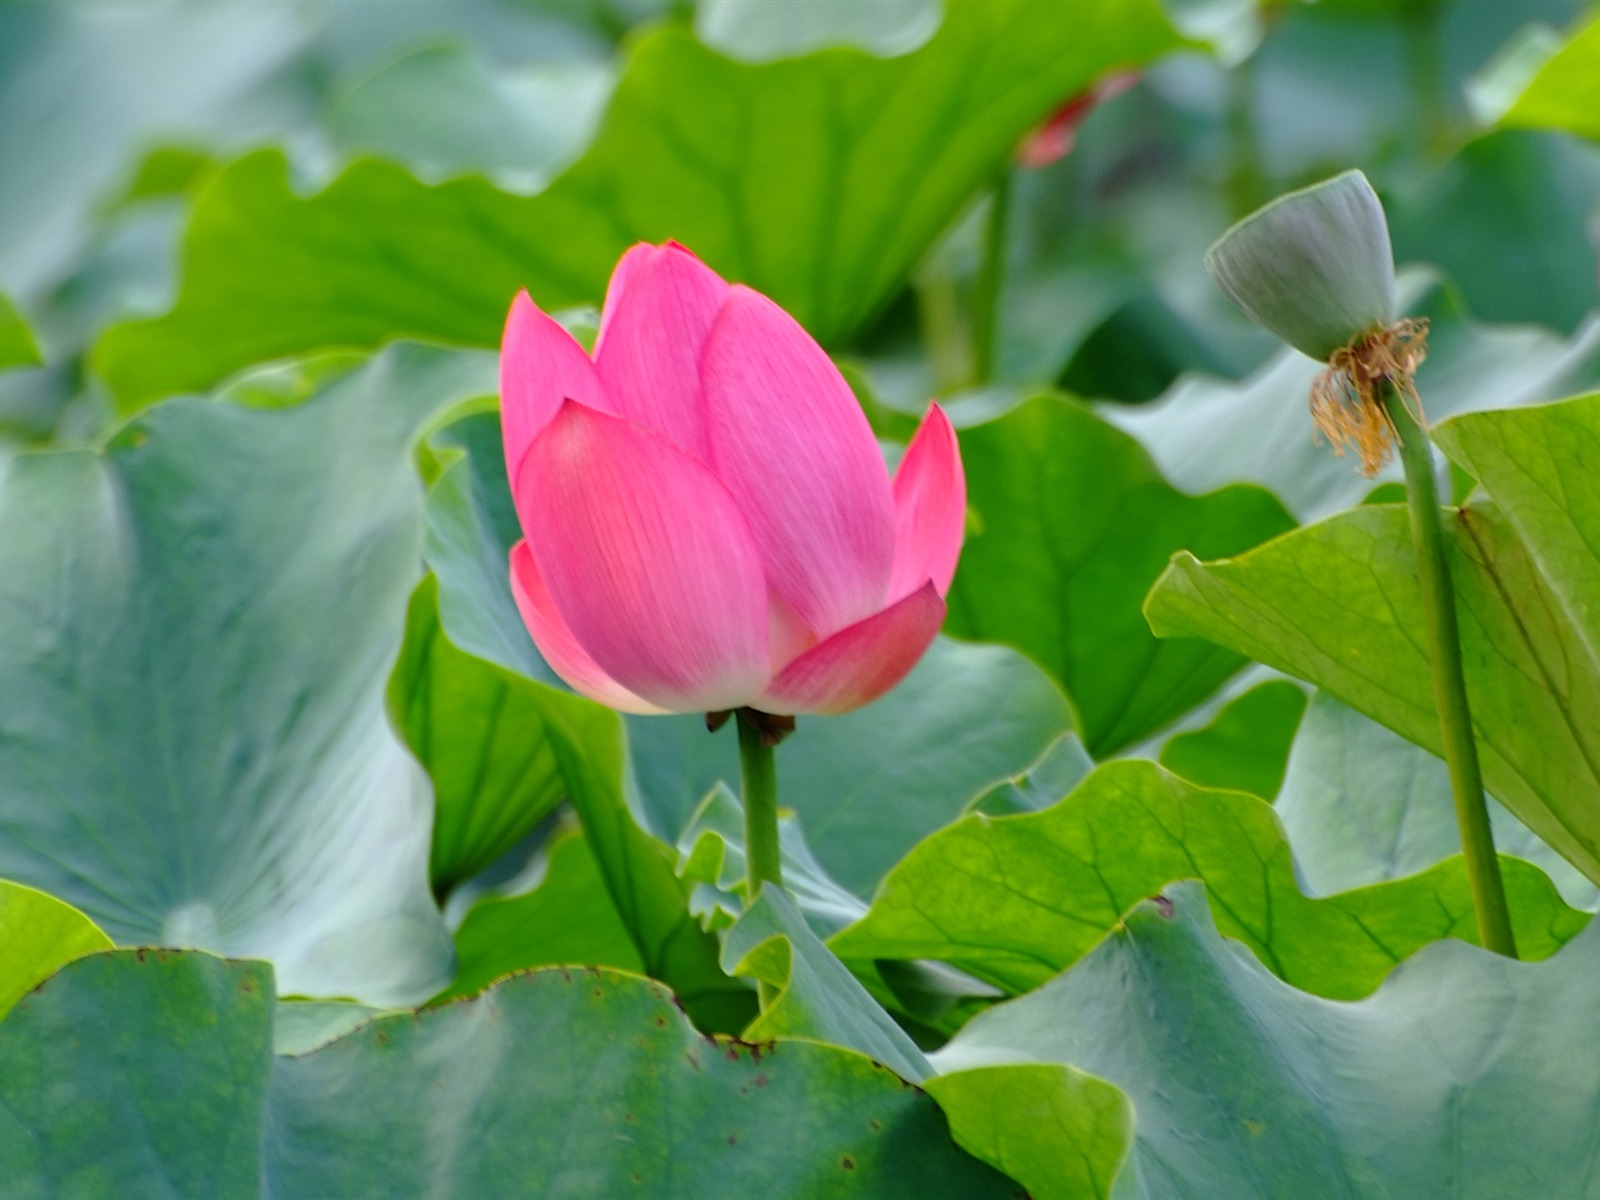 Rose Garden of the Lotus (rebar works) #7 - 1600x1200